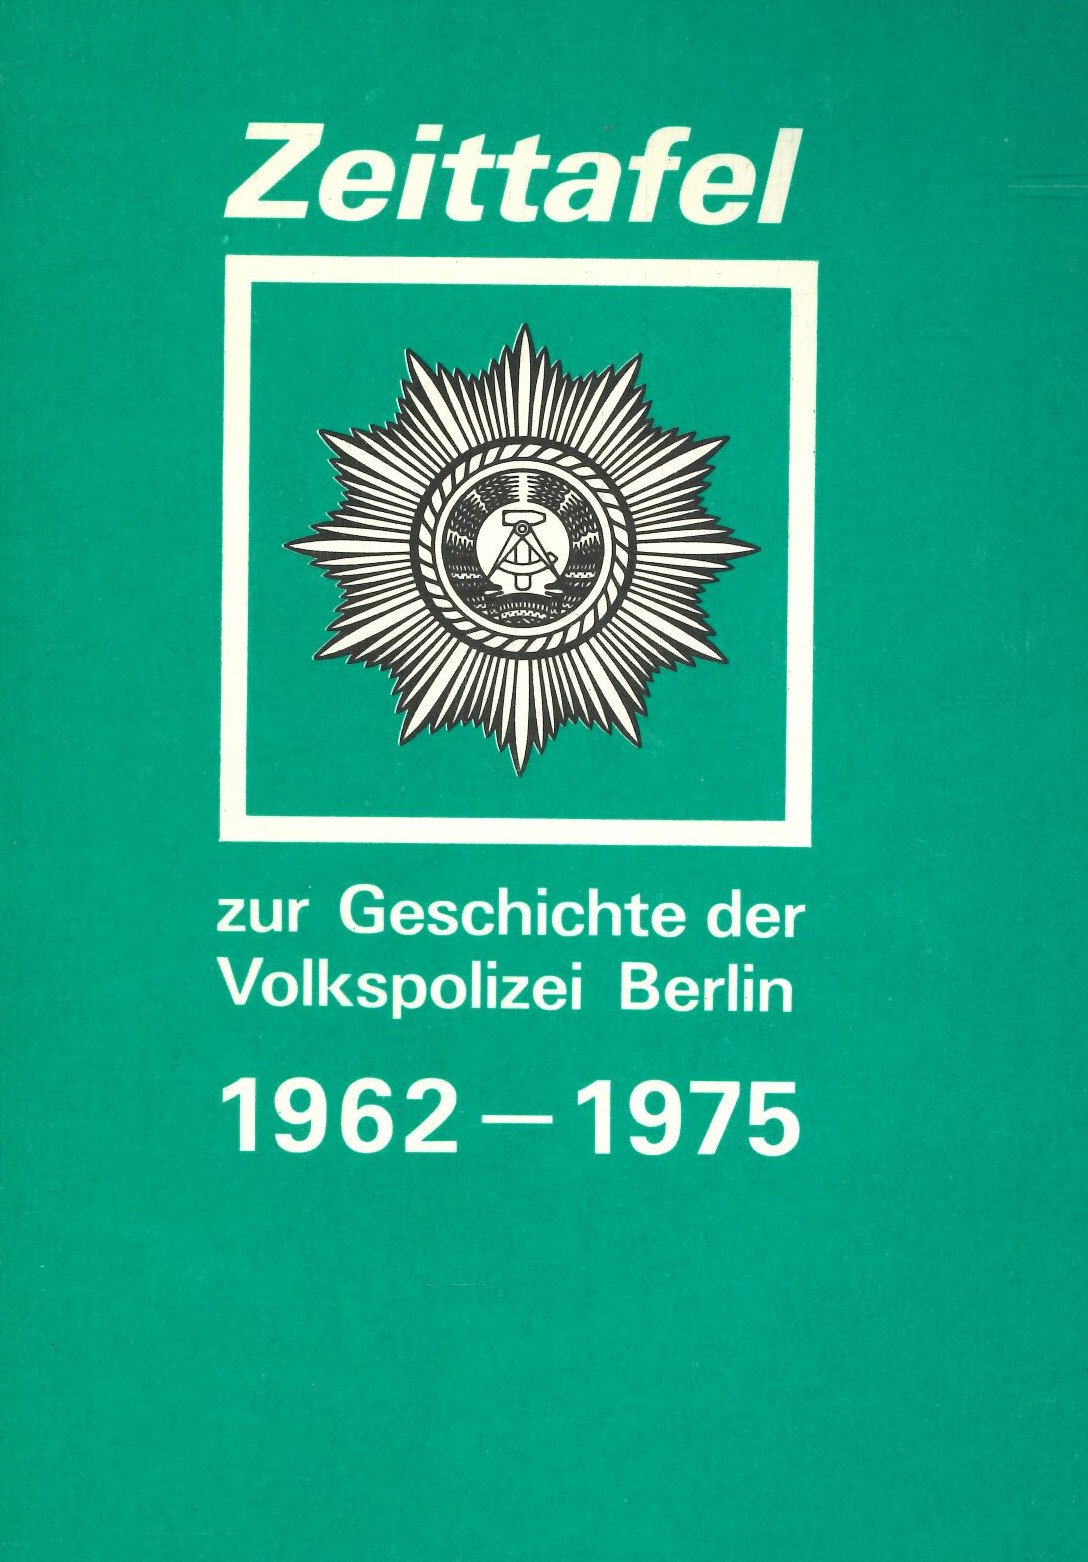 Zeittafel zur Geschichte der Volkspolizei Berlin 1962-1975 (Feuerwehrmuseum Grethen CC BY-NC-SA)